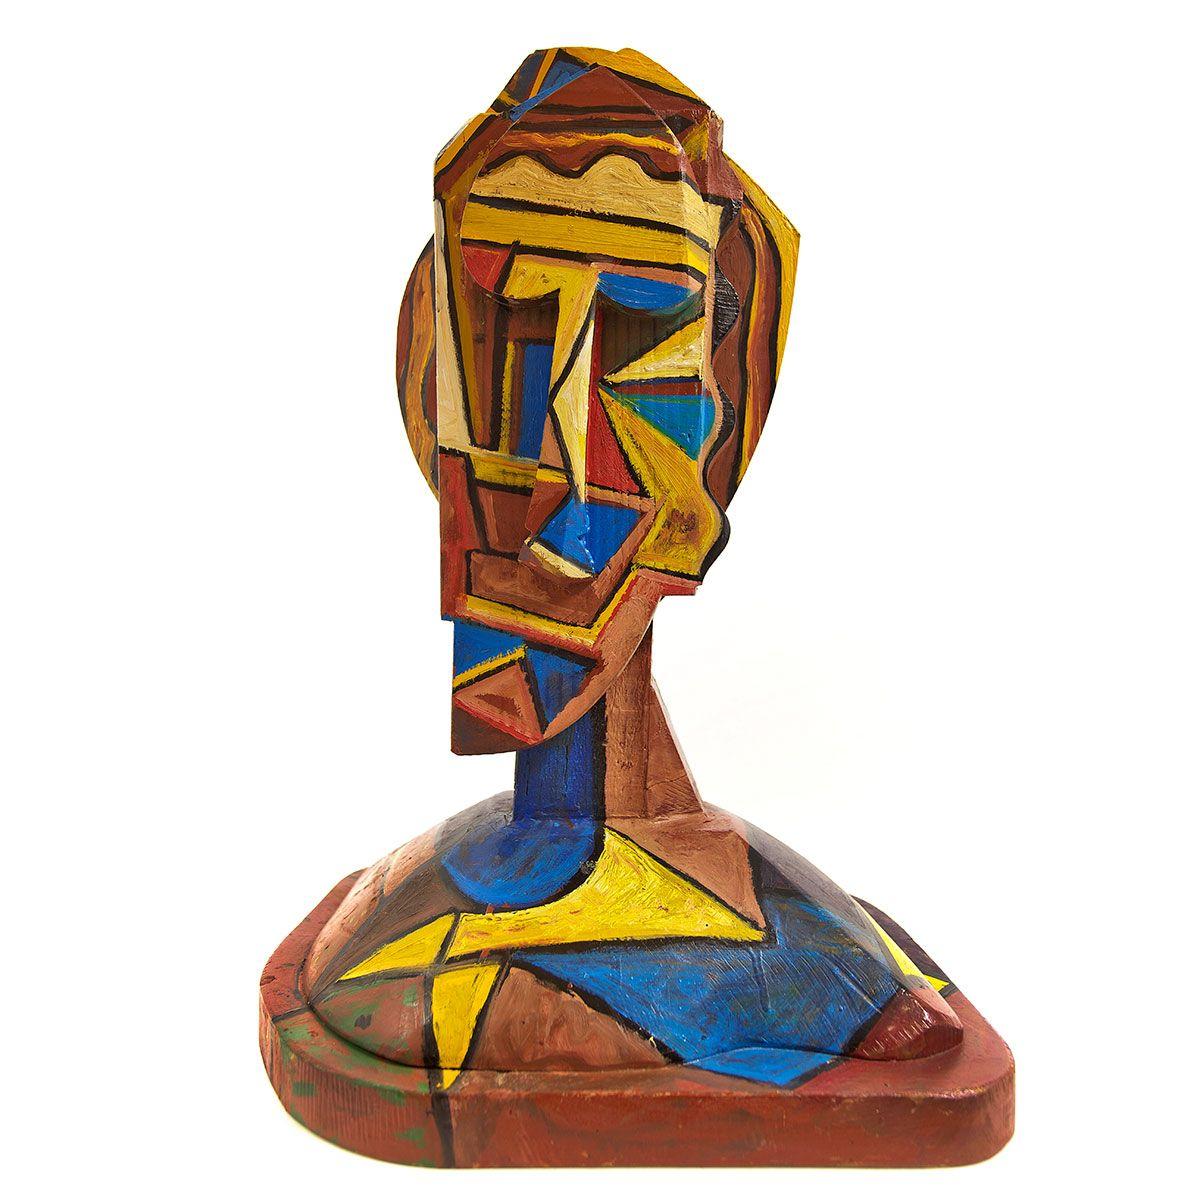 Tête de sculpture en bois peint, géométrique abstraite et cubiste, art néo- figuratif italien